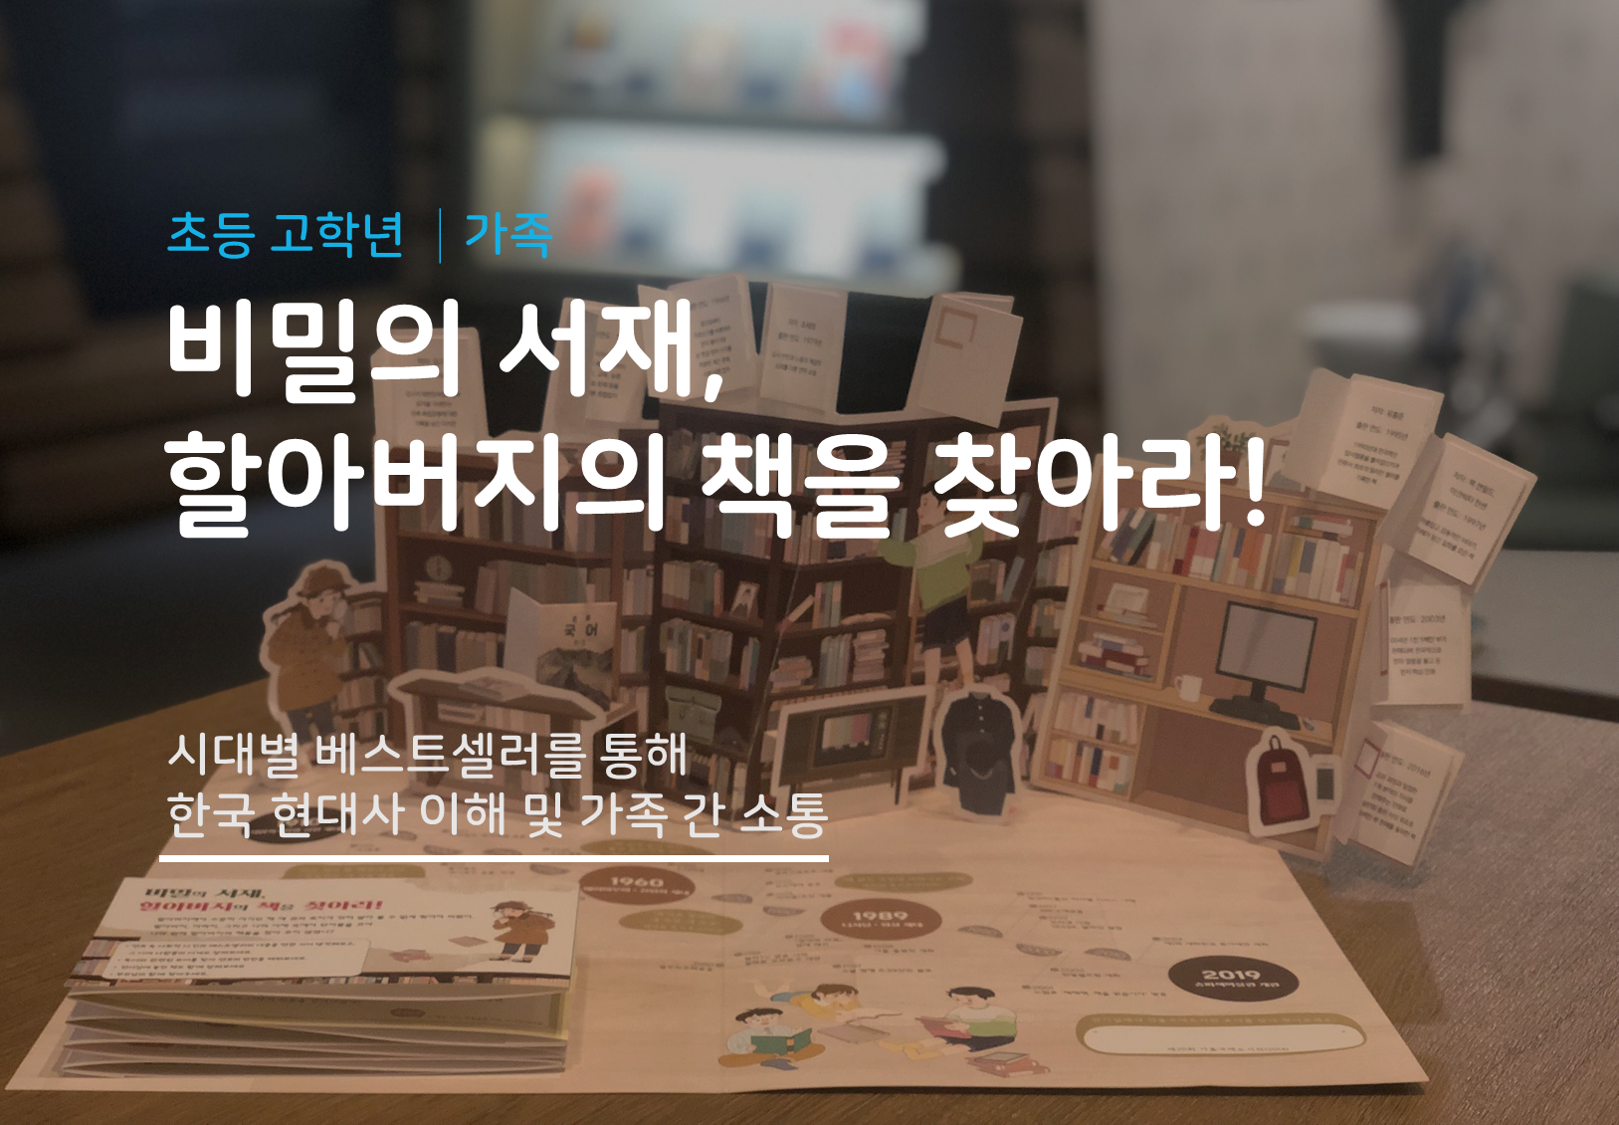 [서울] [송파책박물관] 비밀의 서재, 할아버지의 책을 찾아라!